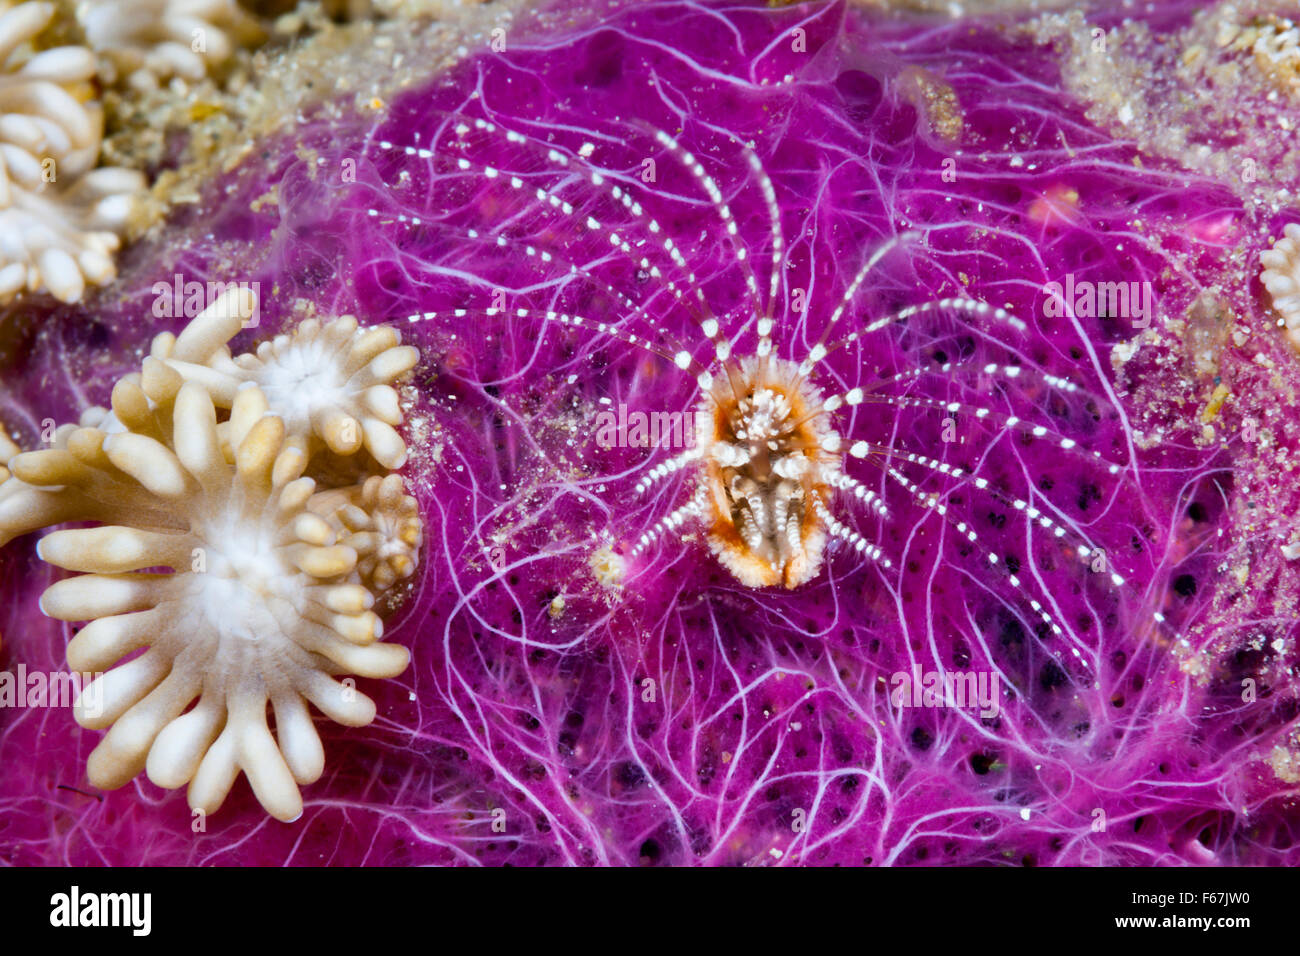 Korallen Barnacle Filtrat Plankton, Ceratoconcha SP., Komodo National Park, Indonesien Stockfoto